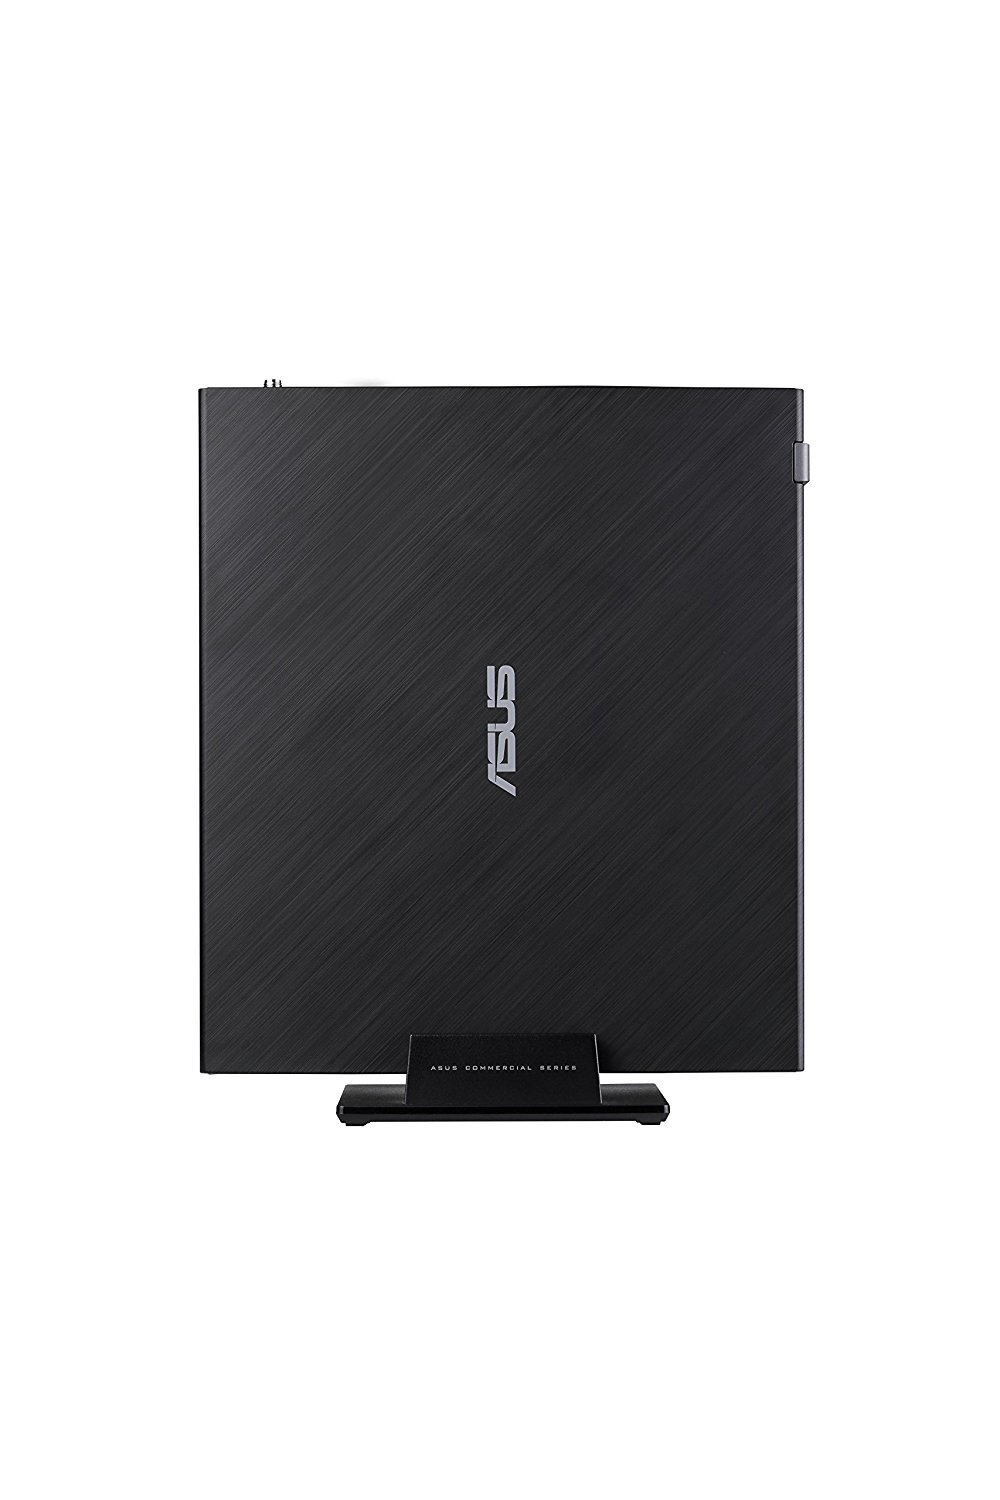 Asus Pro E520-B001Z, hardware